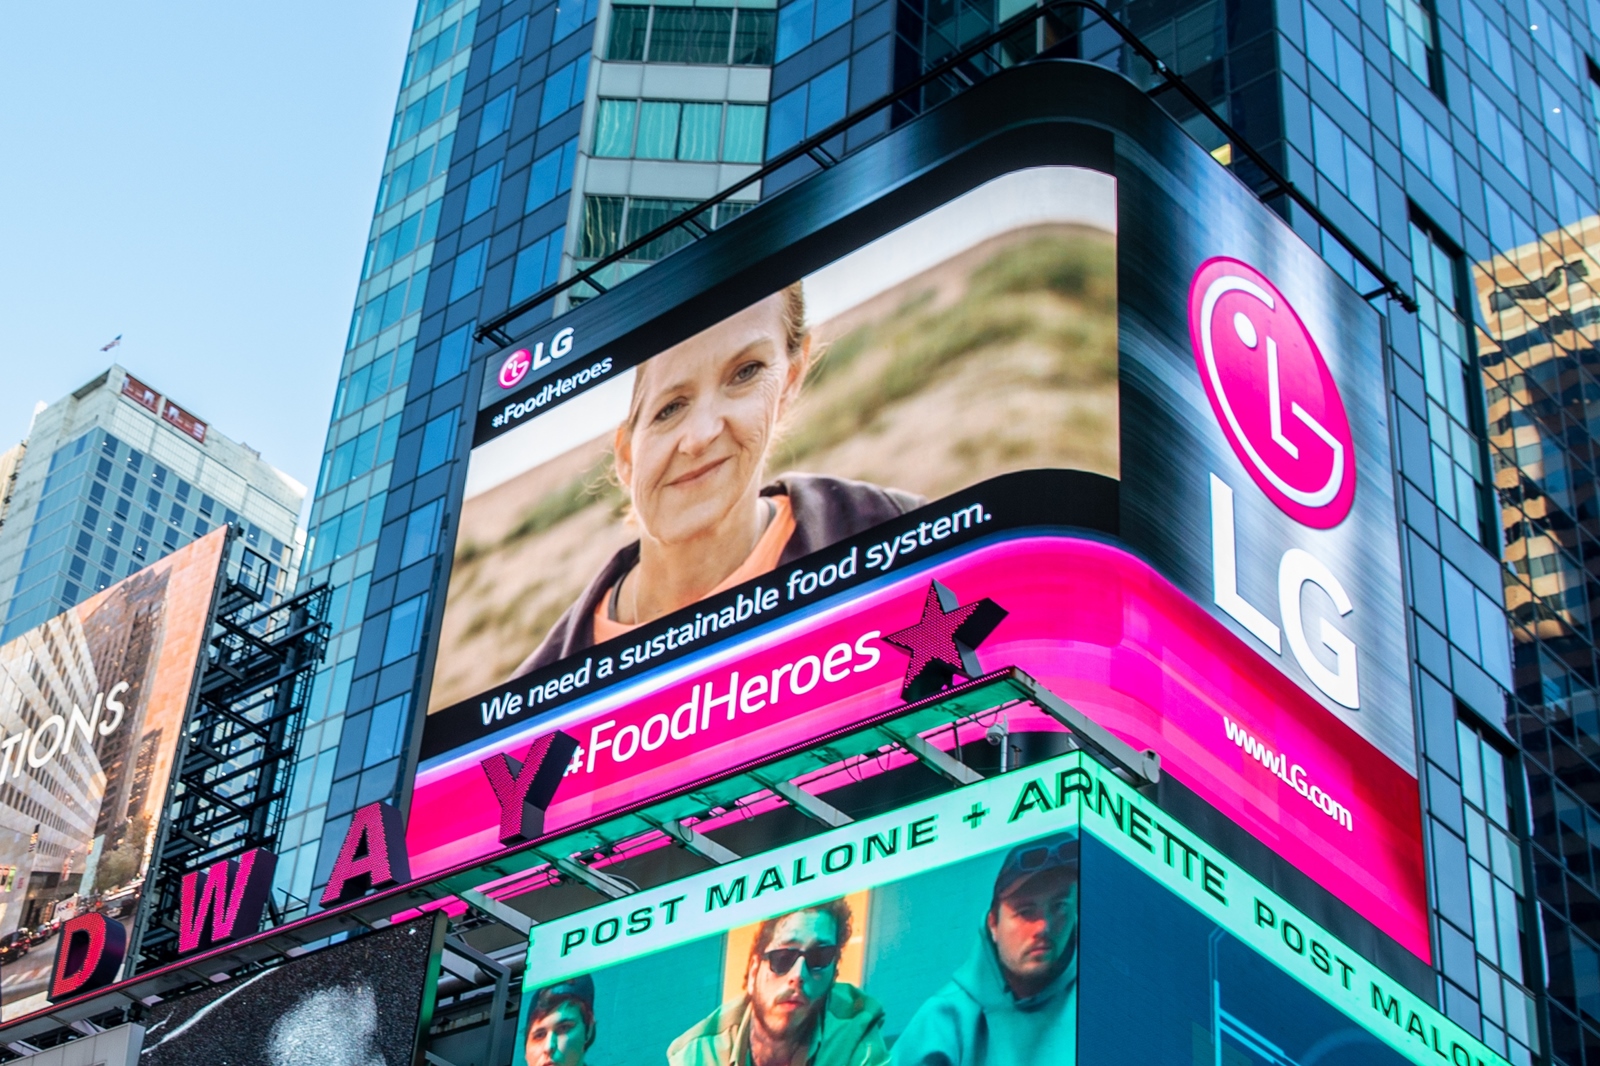 뉴욕 맨해튼 타임스스퀘어에 있는 전광판에서 상영 중인 LG전자 공익 영상